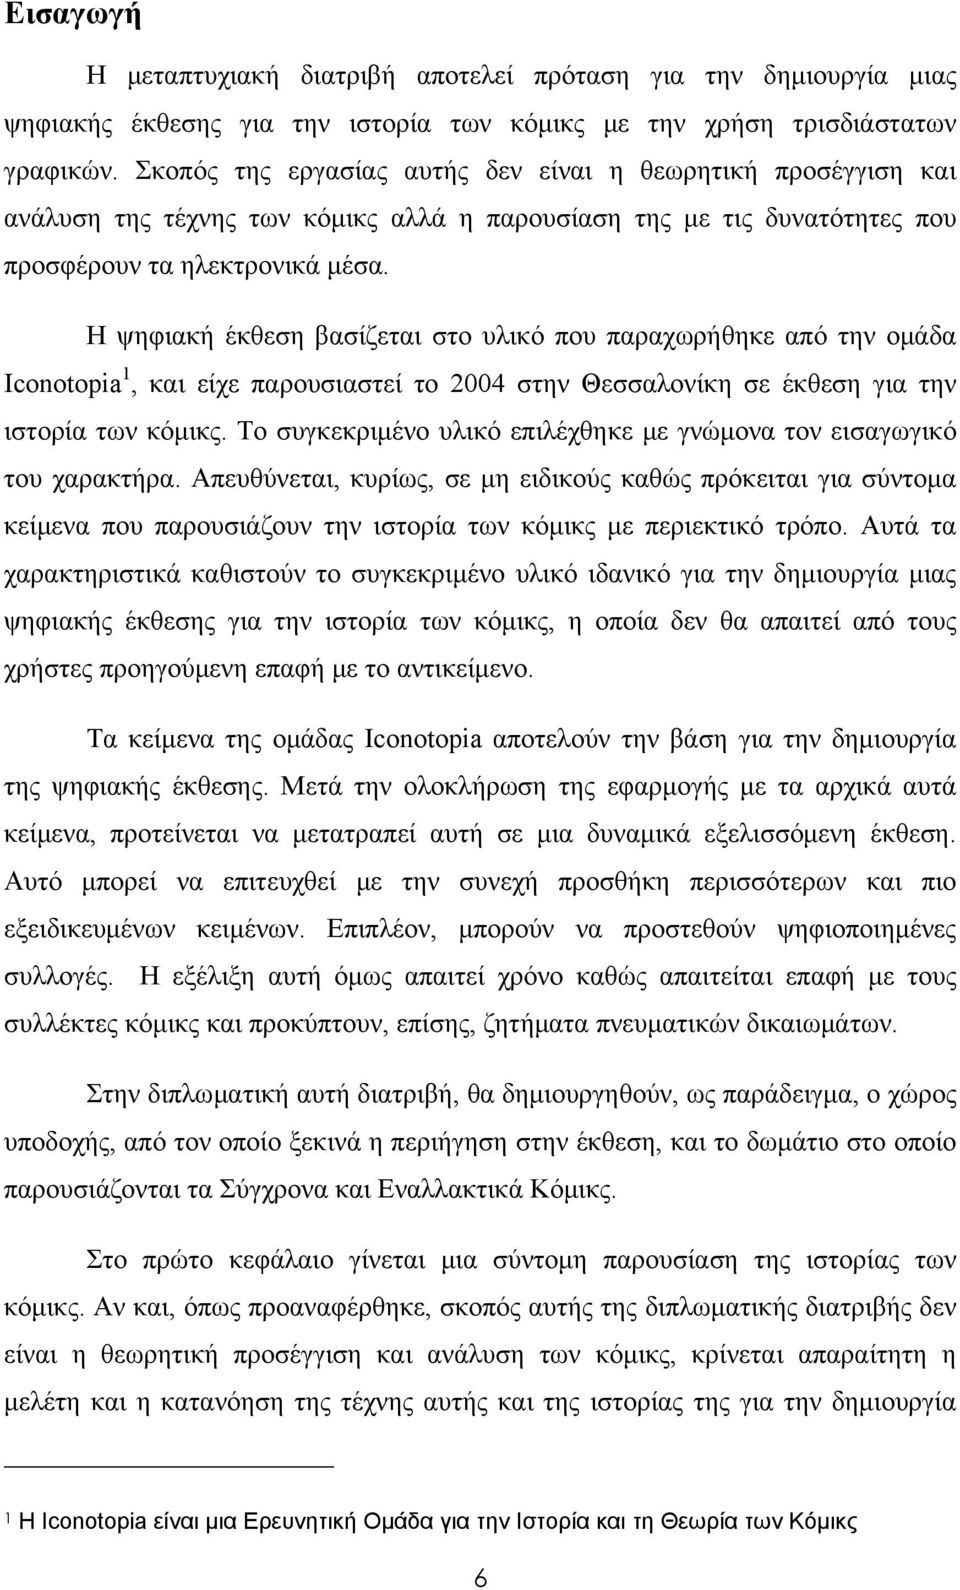 Η ψηφιακή έκθεση βασίζεται στο υλικό που παραχωρήθηκε από την ομάδα Iconotopia 1, και είχε παρουσιαστεί το 2004 στην Θεσσαλονίκη σε έκθεση για την ιστορία των κόμικς.